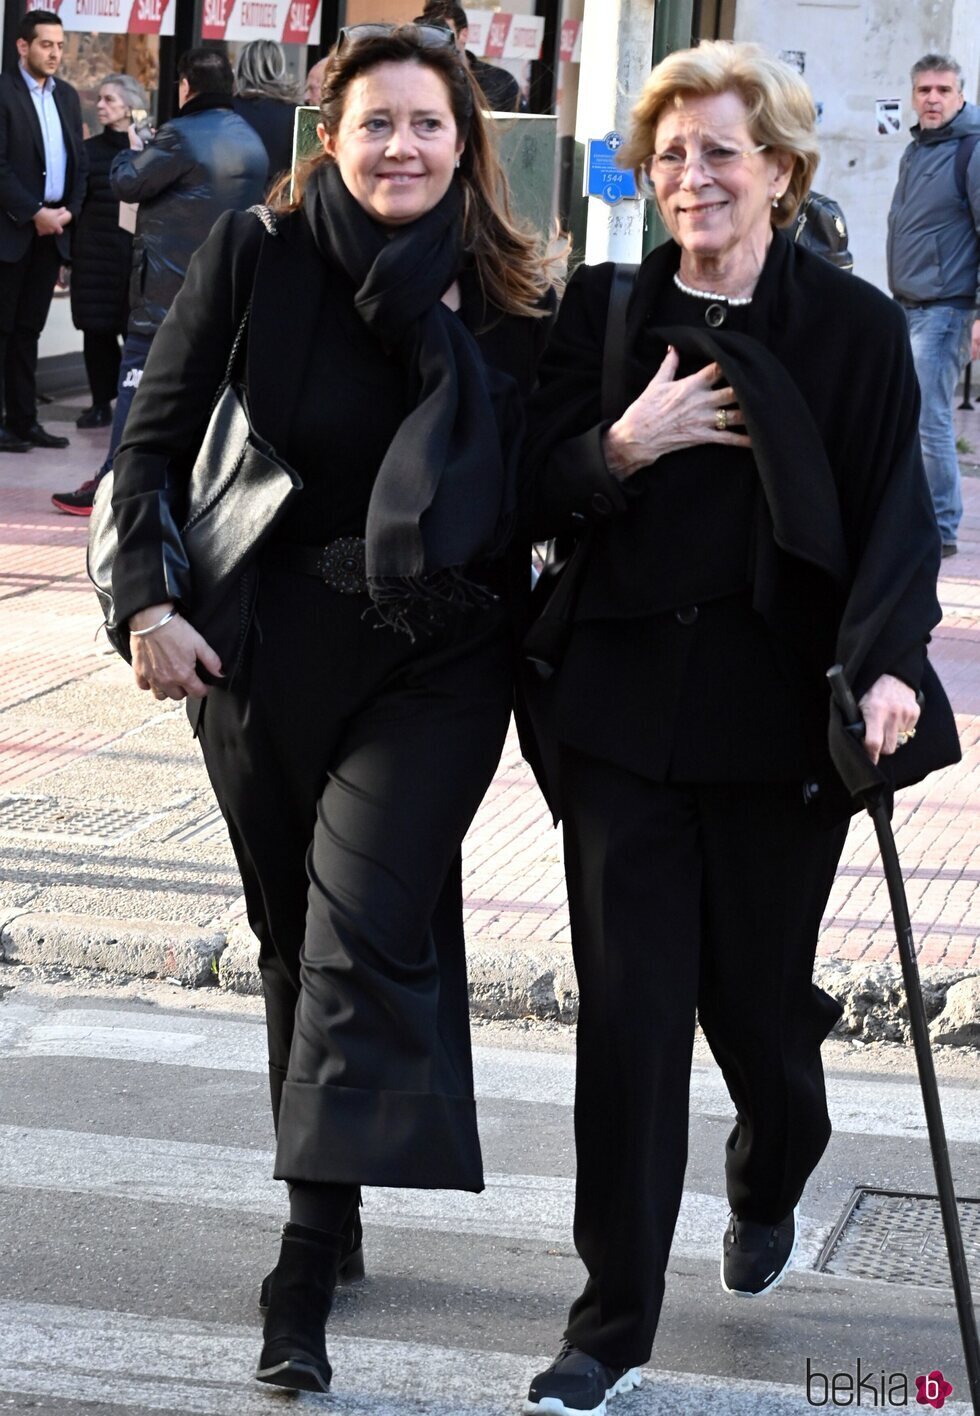 La Reina Ana María de Grecia y su hija, Alexia, vestidas de luto, saliendo de un restaurante en Atenas